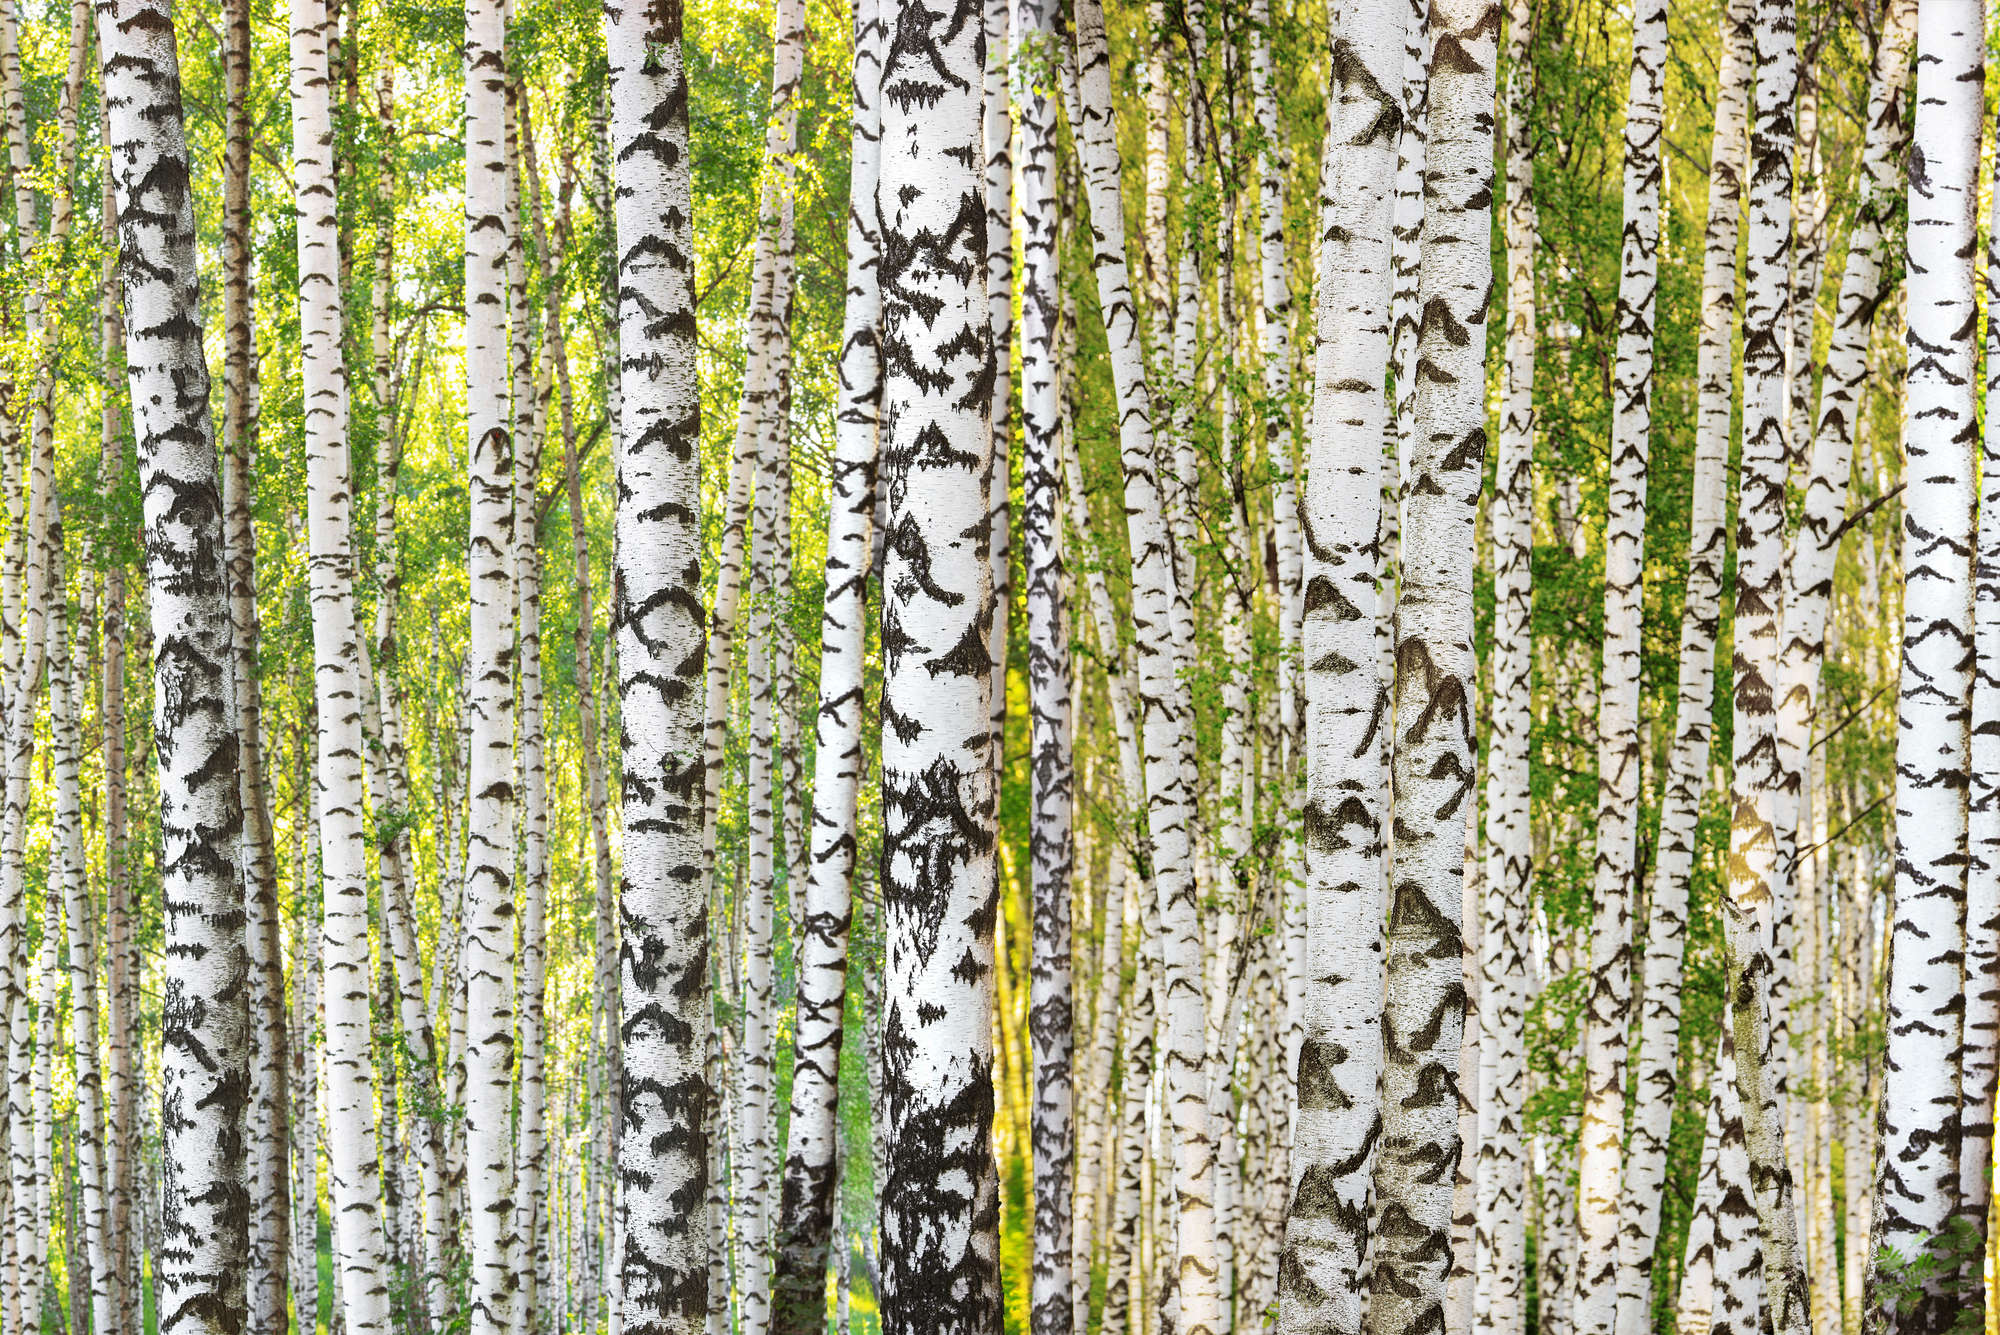             Birch forest wall mural tree trunk motif on matt smooth non-woven
        